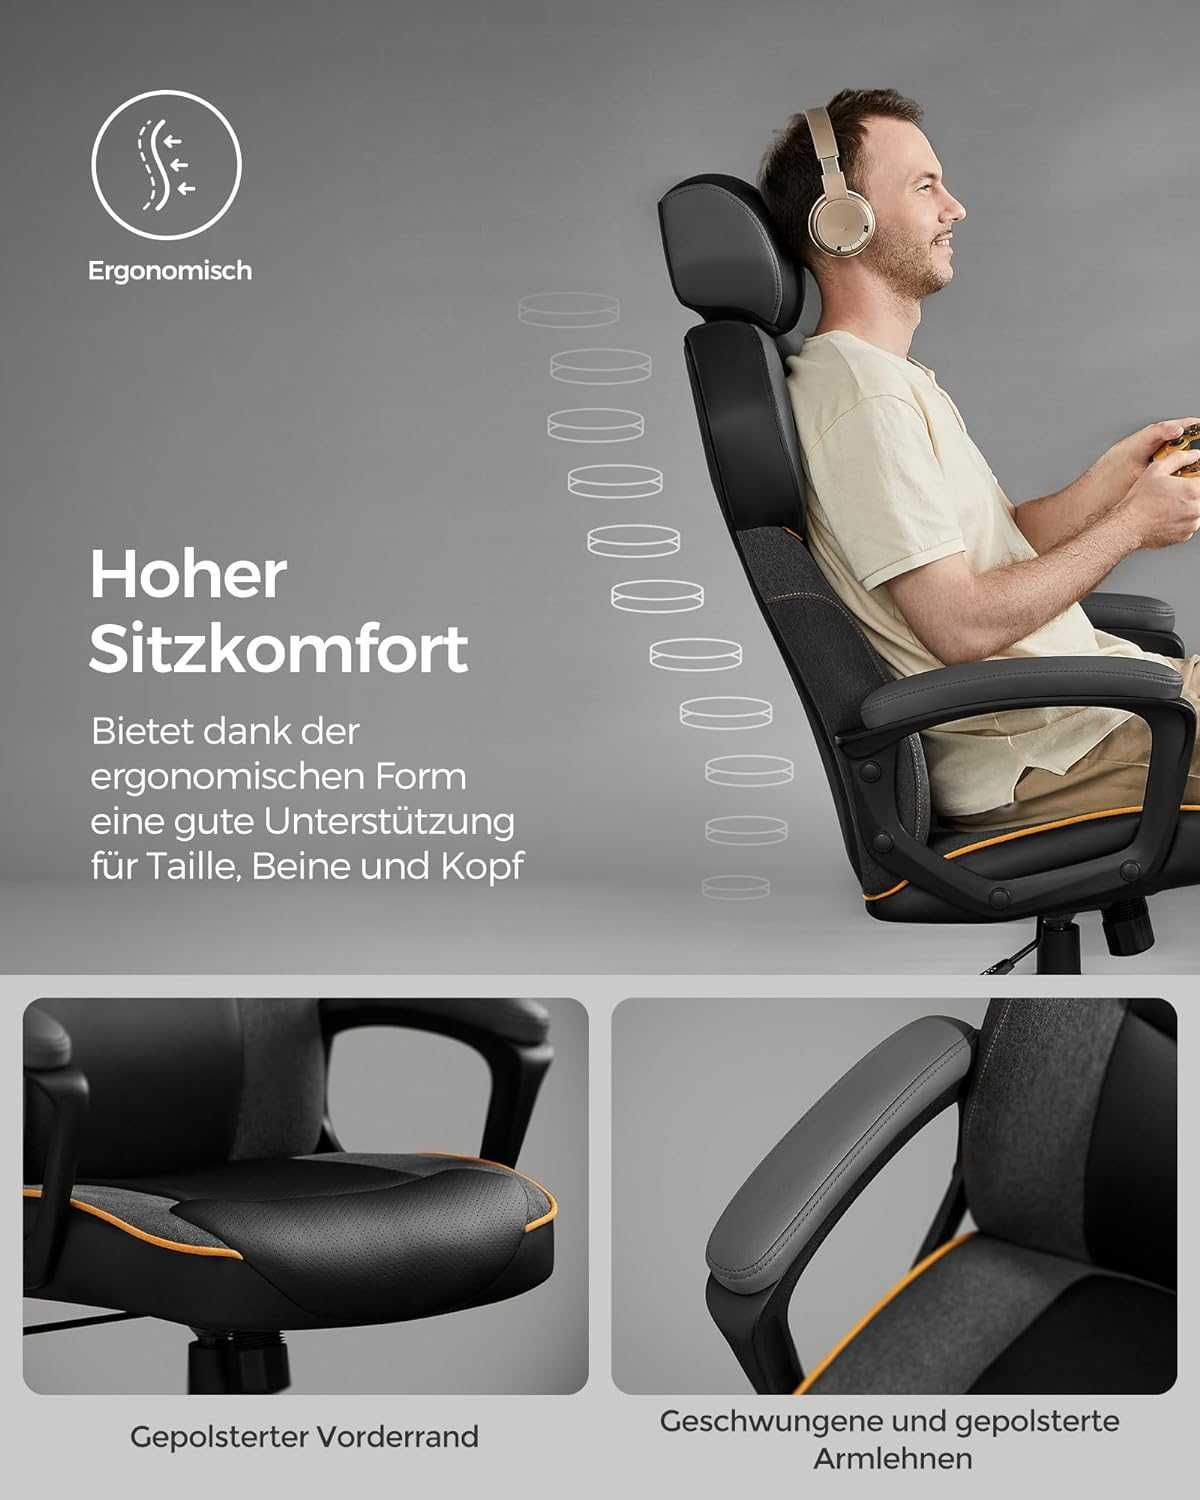 Nowe krzesło biurowe / gamingowe / fotel ergo / SONGMICS !6518!